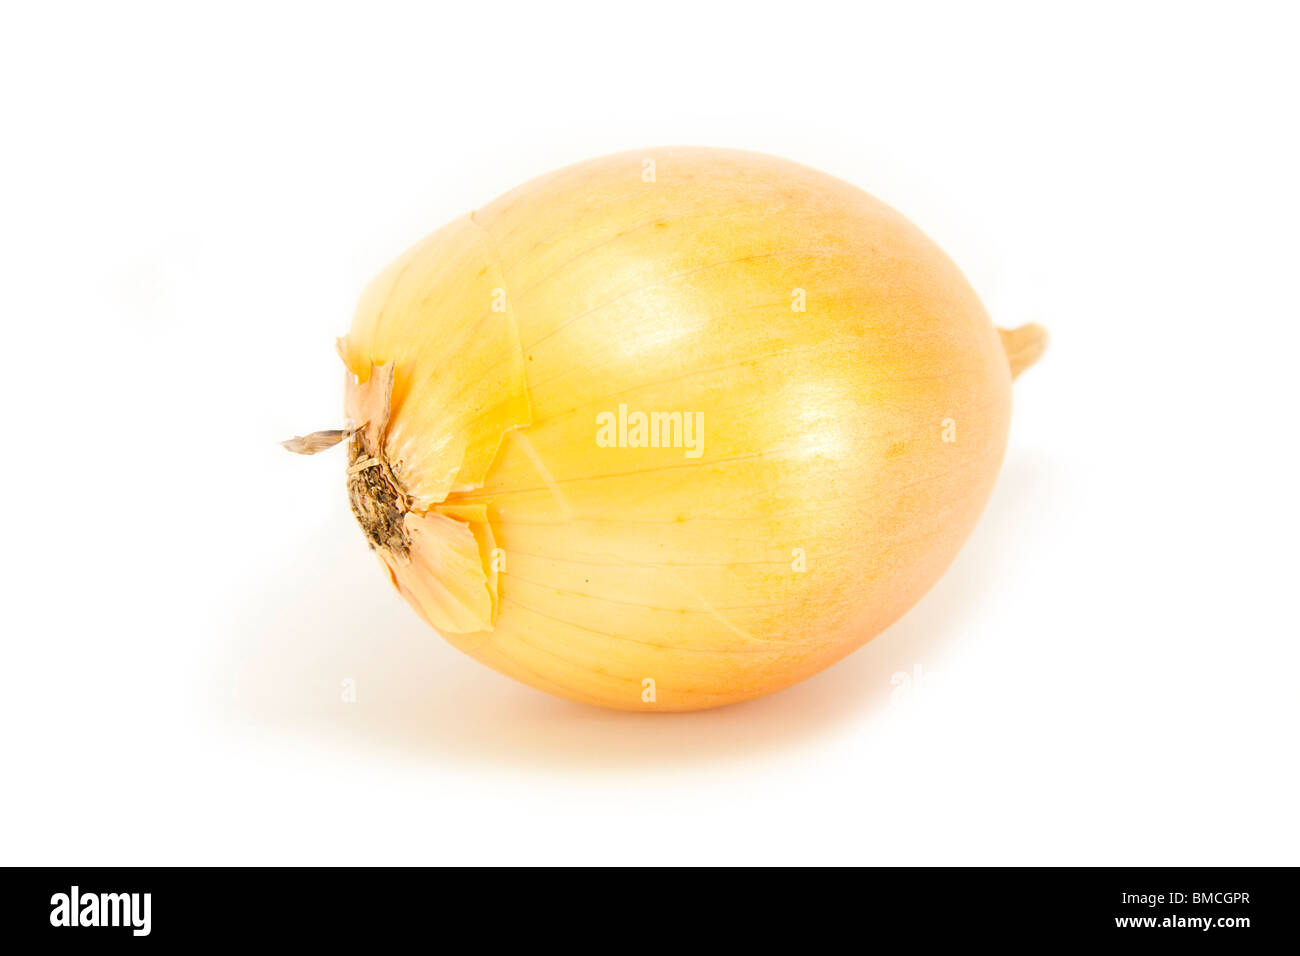 Whole Onion on white Stock Photo